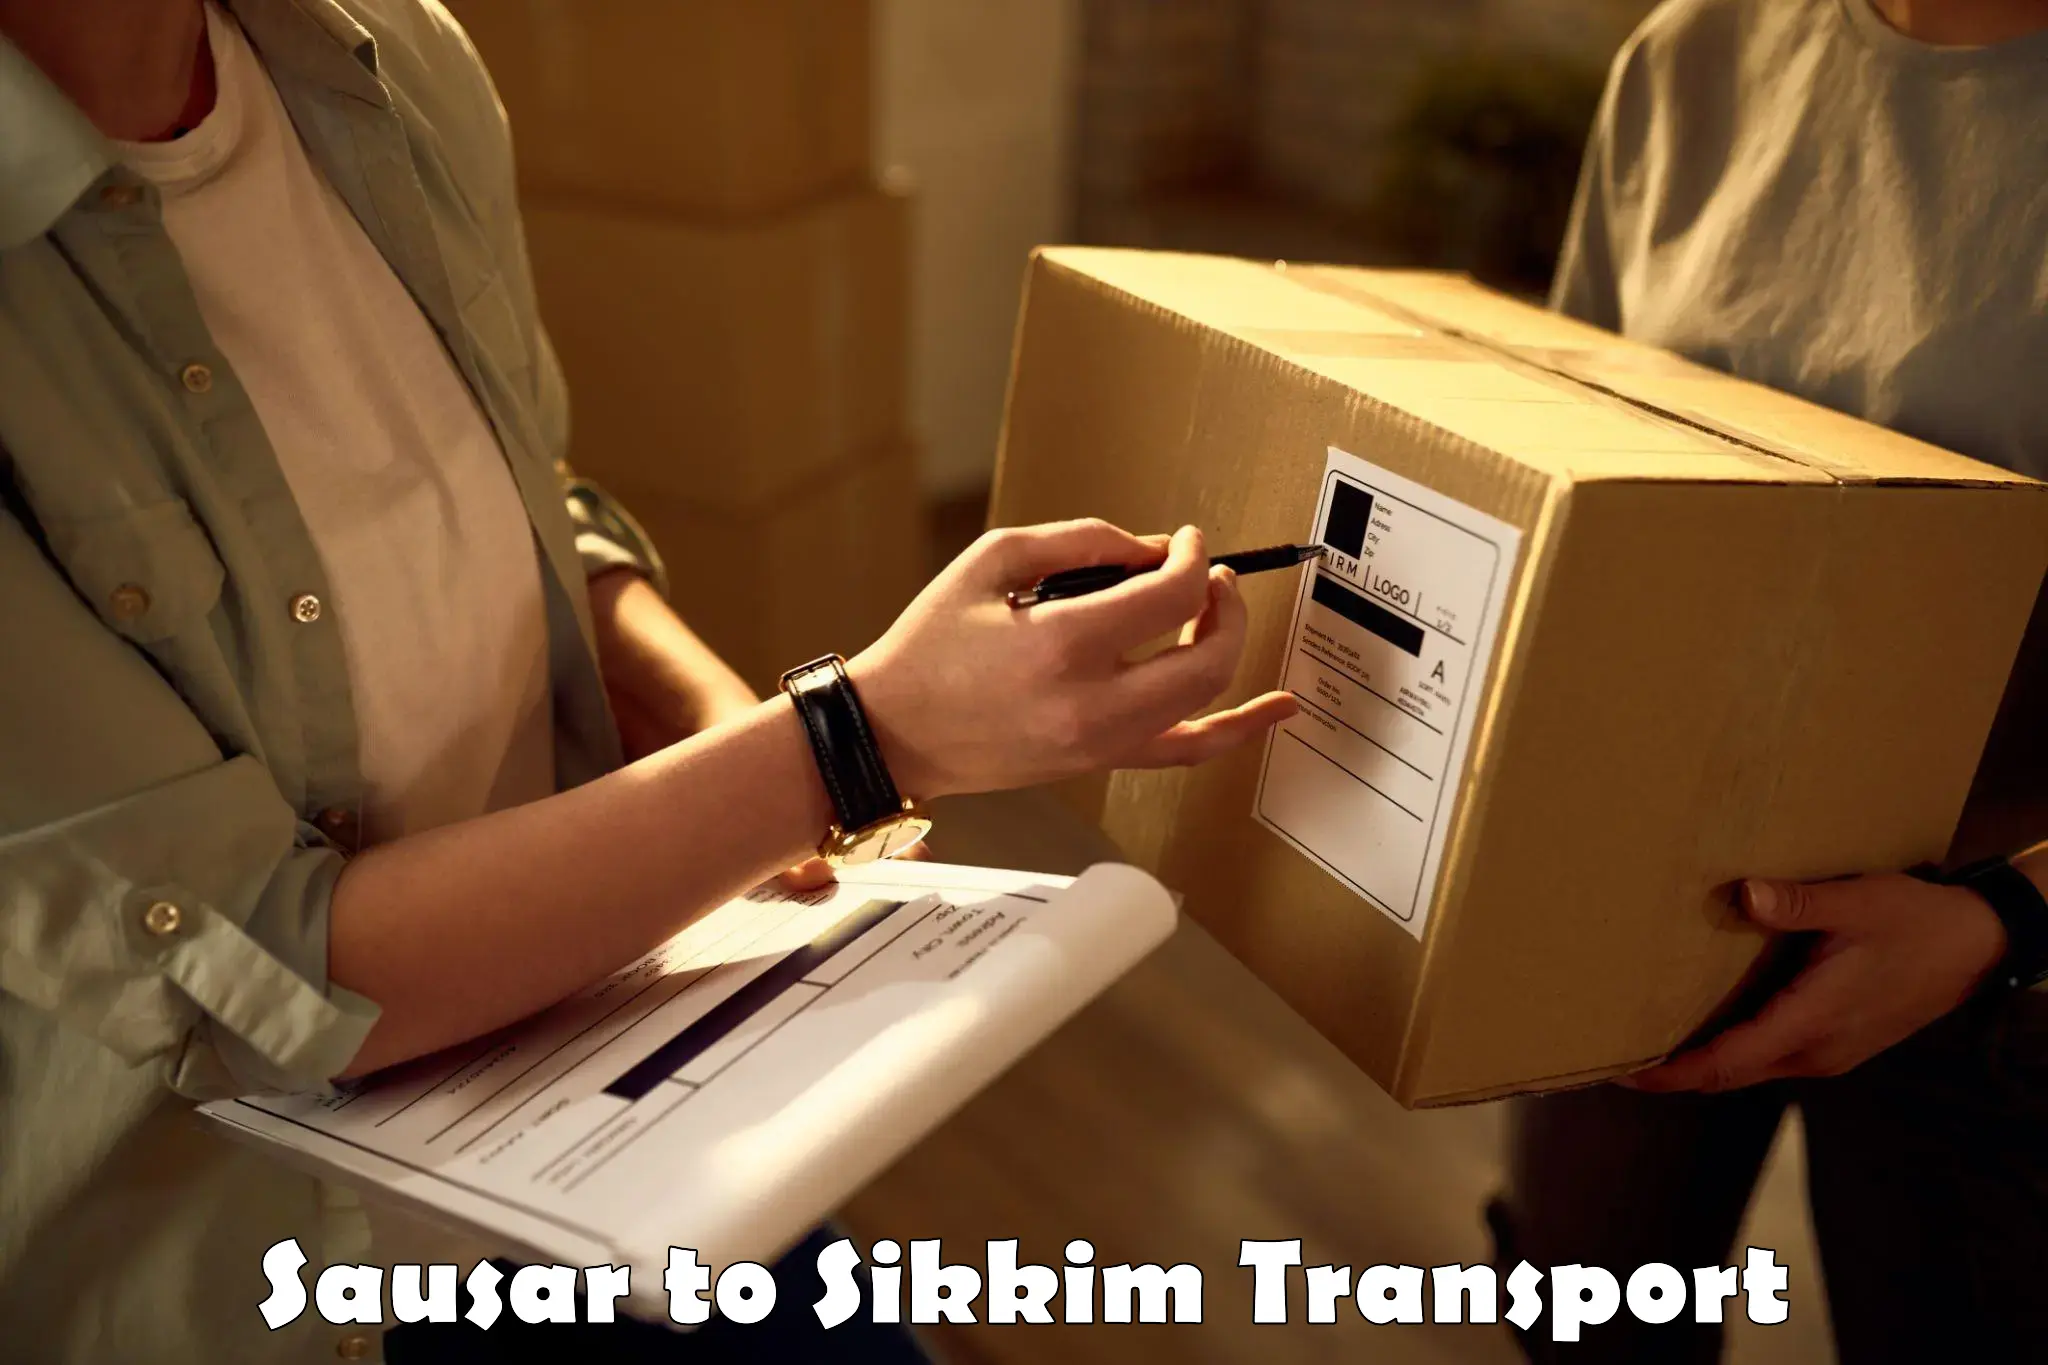 Nearest transport service Sausar to Mangan